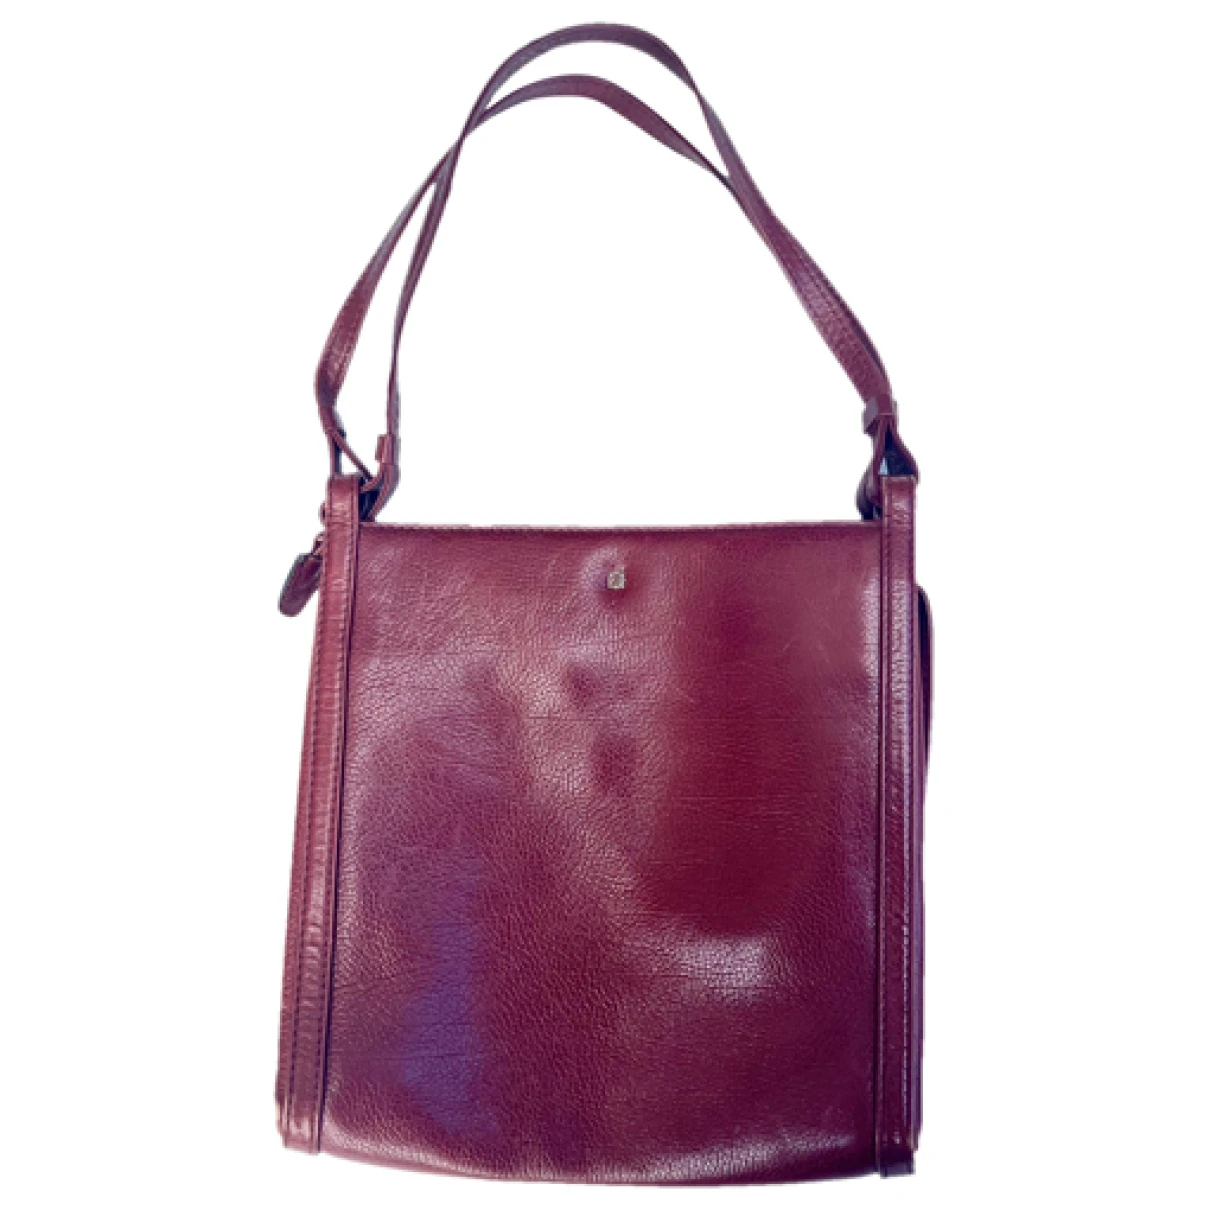 Pre-owned Loewe Leather Handbag In Burgundy